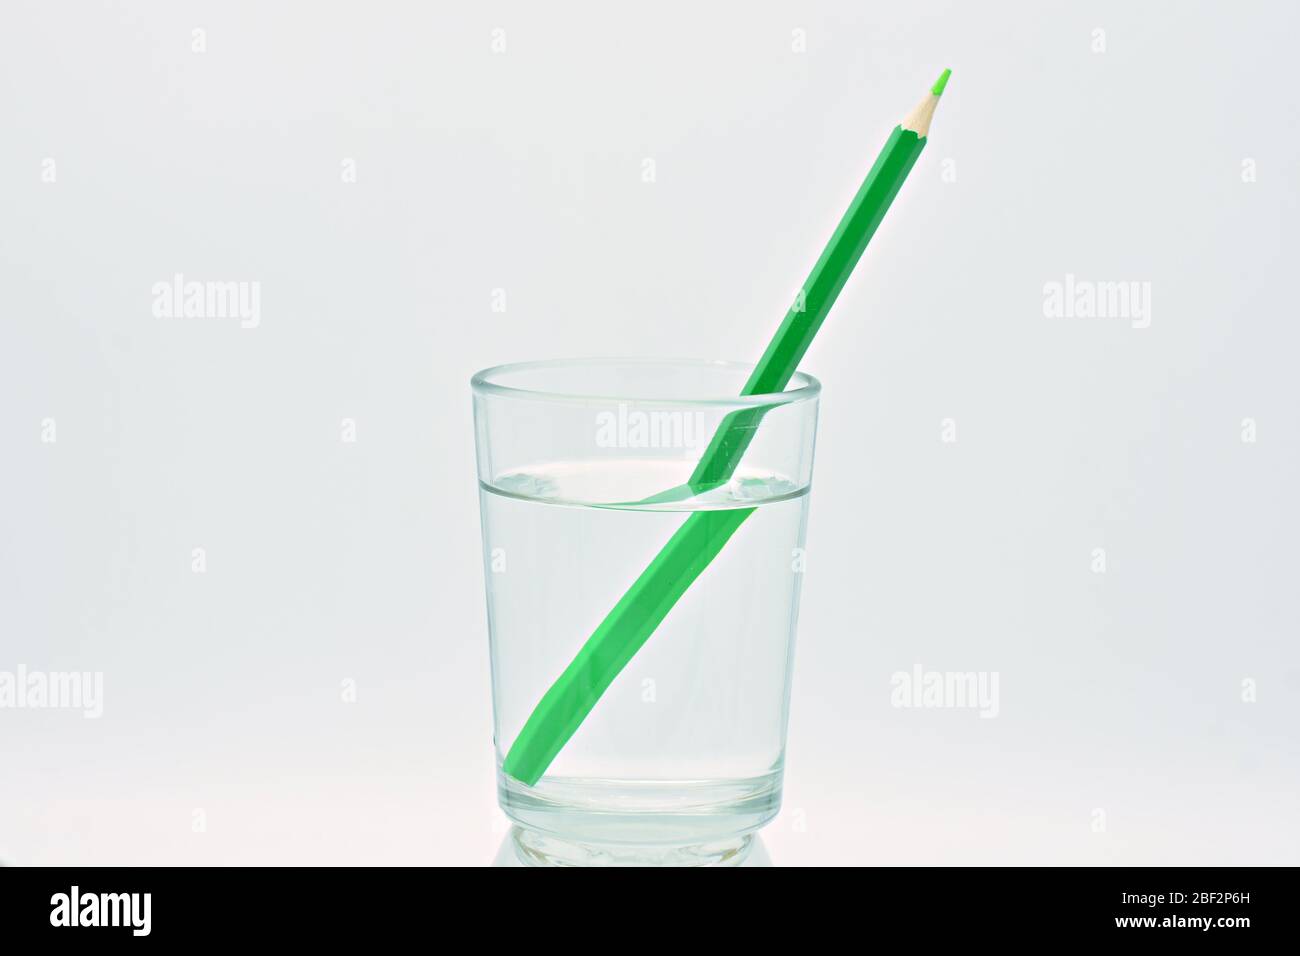 Crayon jaune et vert, à l'intérieur d'un verre rempli d'eau, explication de réfraction de lumière Banque D'Images